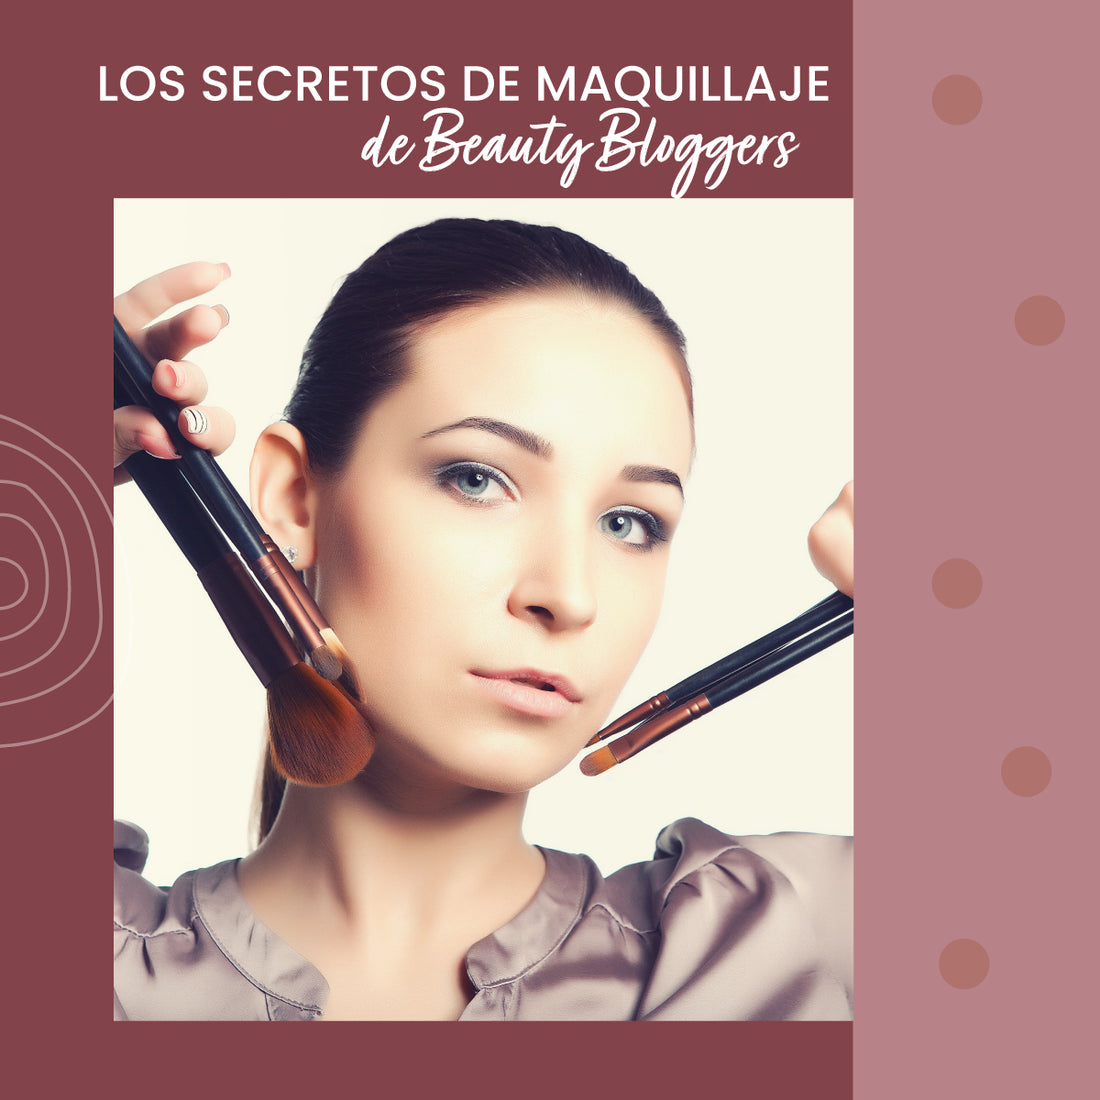 Los secretos de maquillaje de Beauty Bloggers